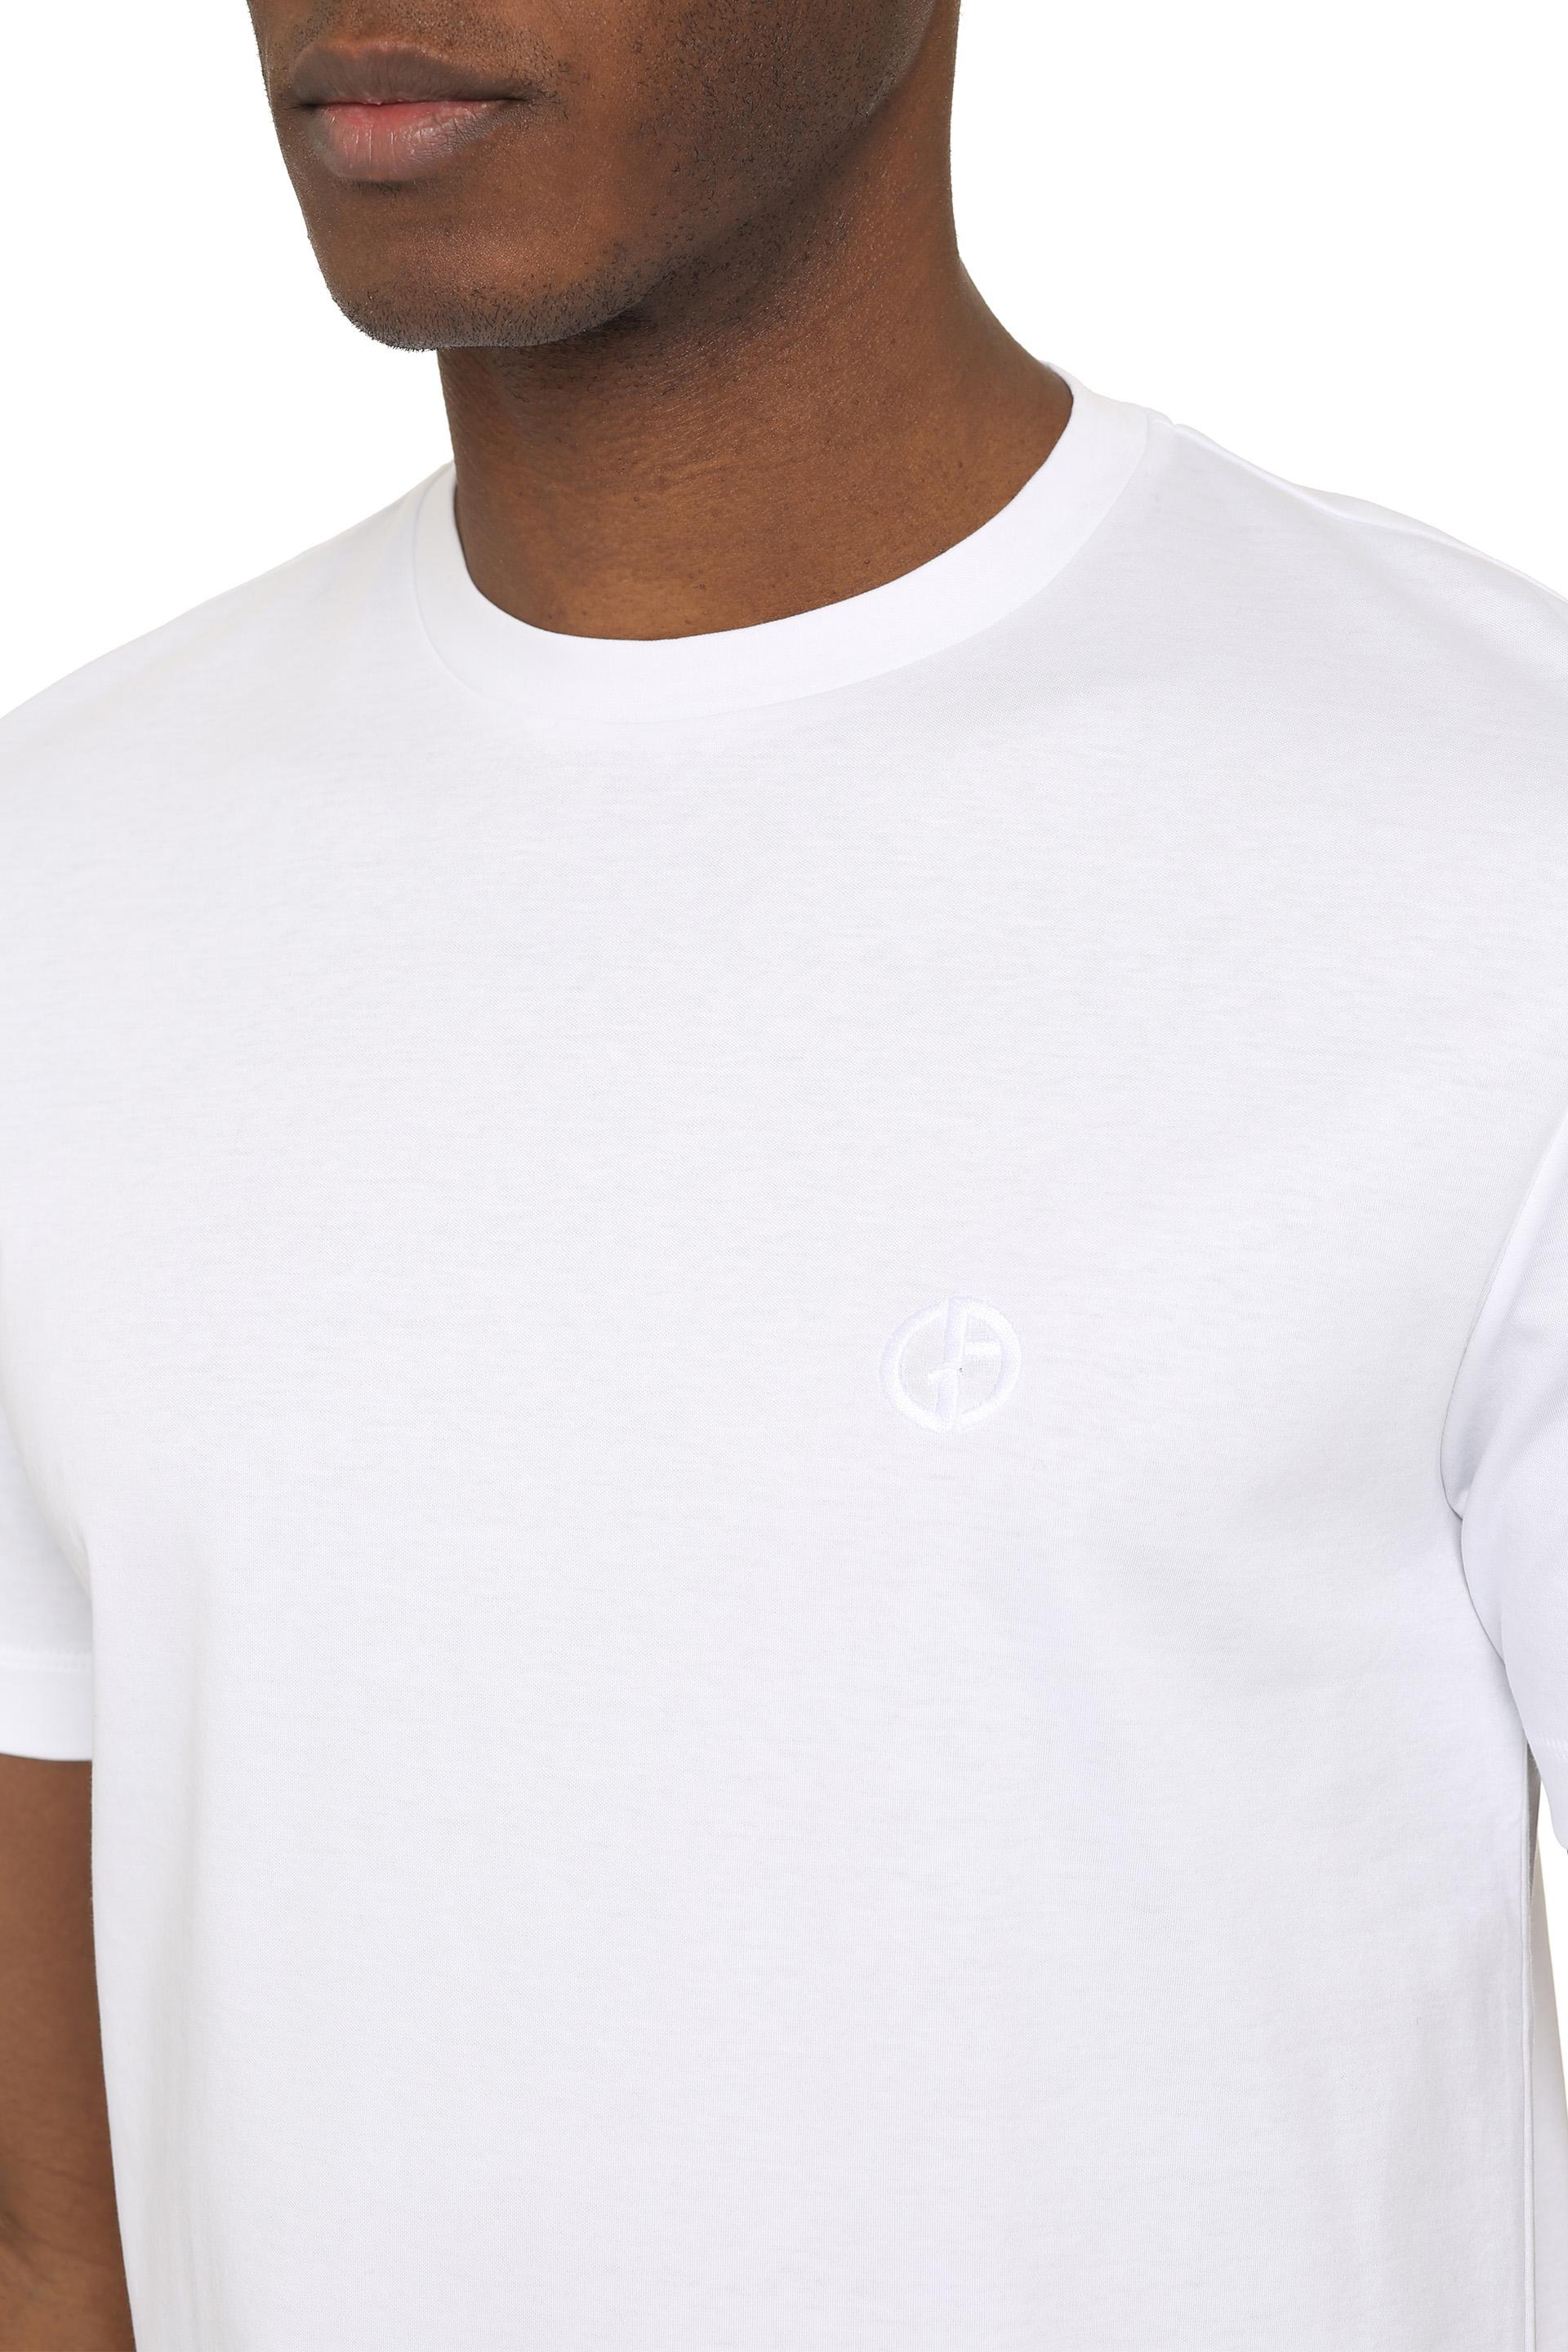 Giorgio Armani Cotton Crew-neck T-shirt in White for Men | Lyst